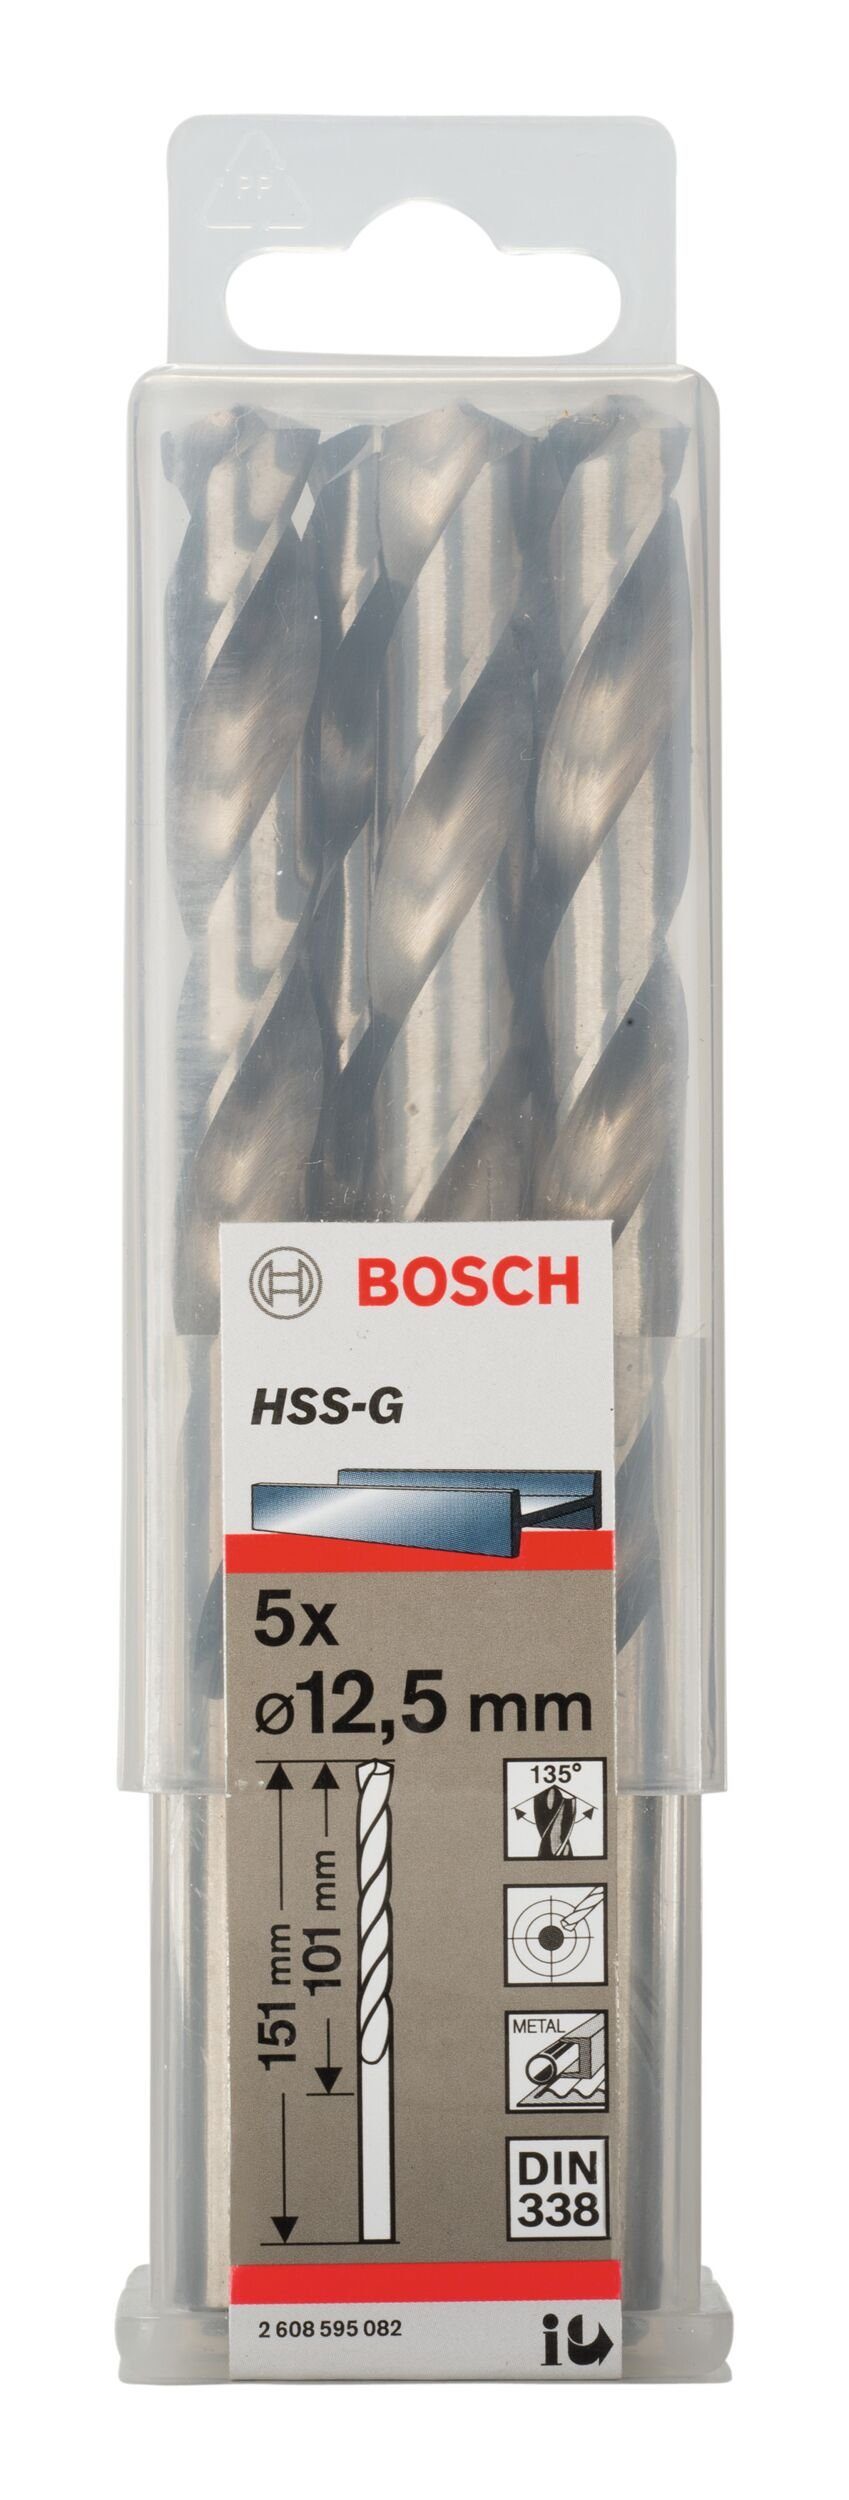 mm (5 x - - BOSCH 338) 151 5er-Pack HSS-G x (DIN Metallbohrer, 12,5 Stück), 101